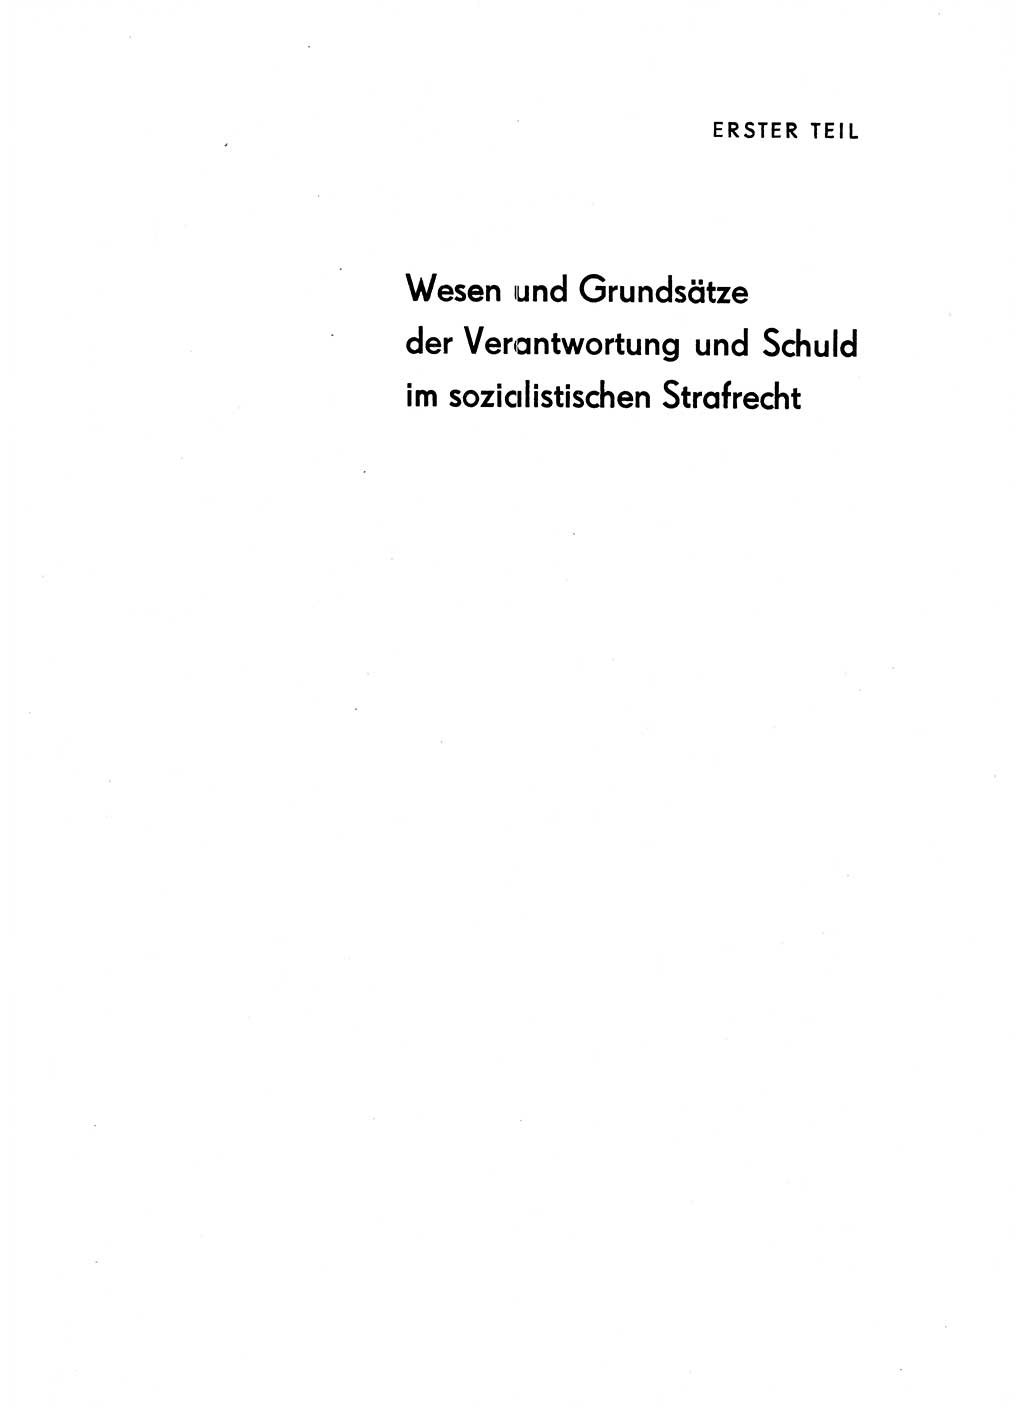 Verantwortung und Schuld im neuen Strafgesetzbuch (StGB) [Deutsche Demokratische Republik (DDR)] 1964, Seite 9 (Verantw. Sch. StGB DDR 1964, S. 9)